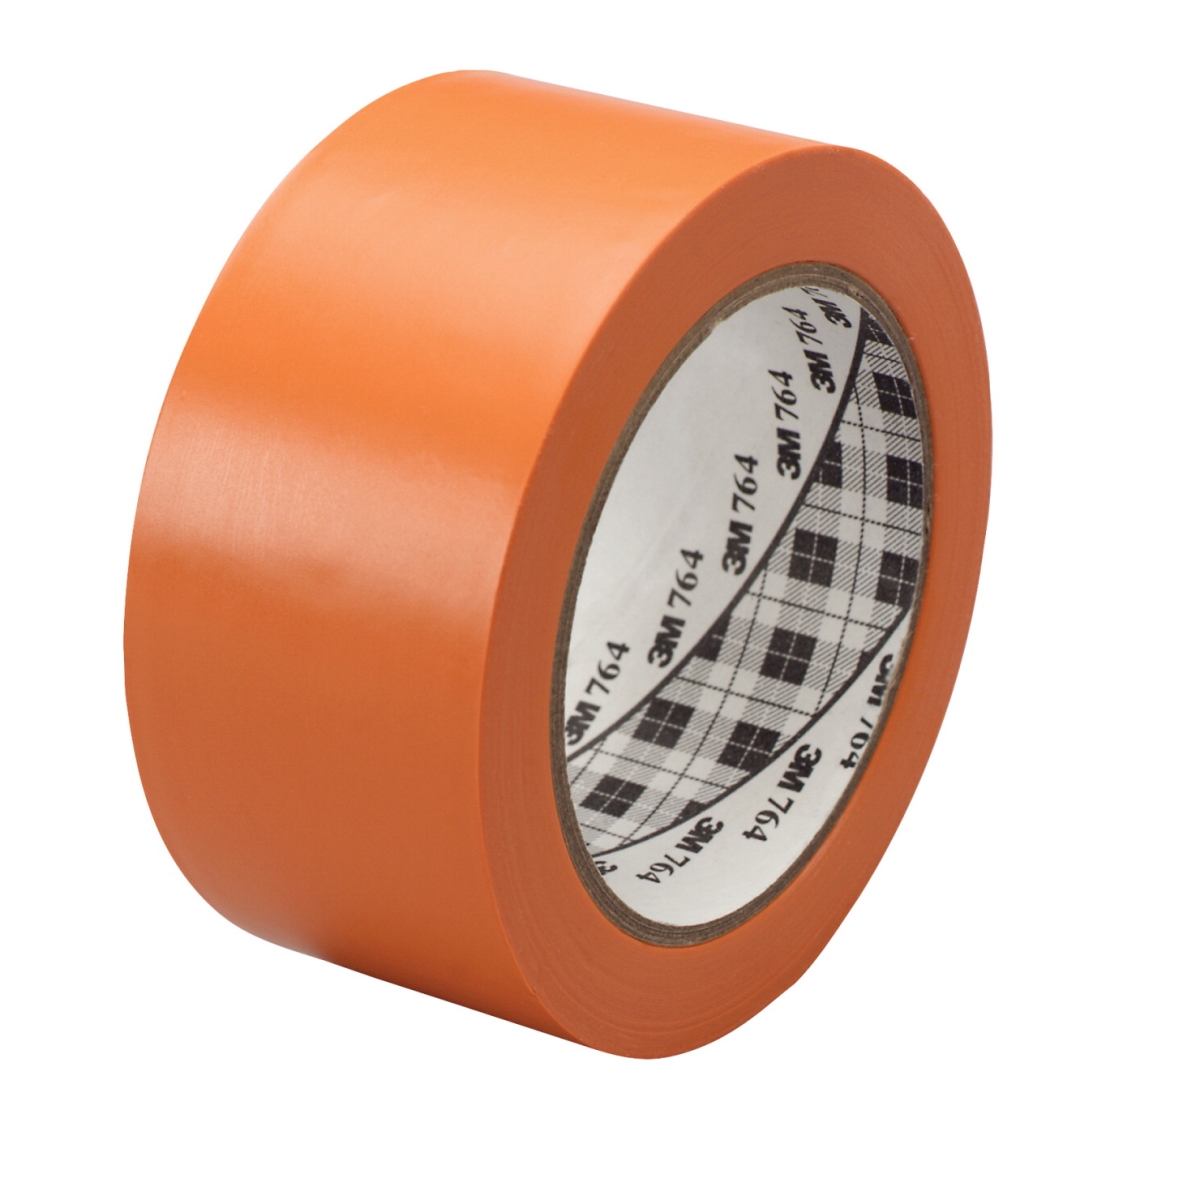 General Purpose Wear Resistant Floor Marking Tape Roll, 2 In. X 36 Yard, Vinyl - Orange